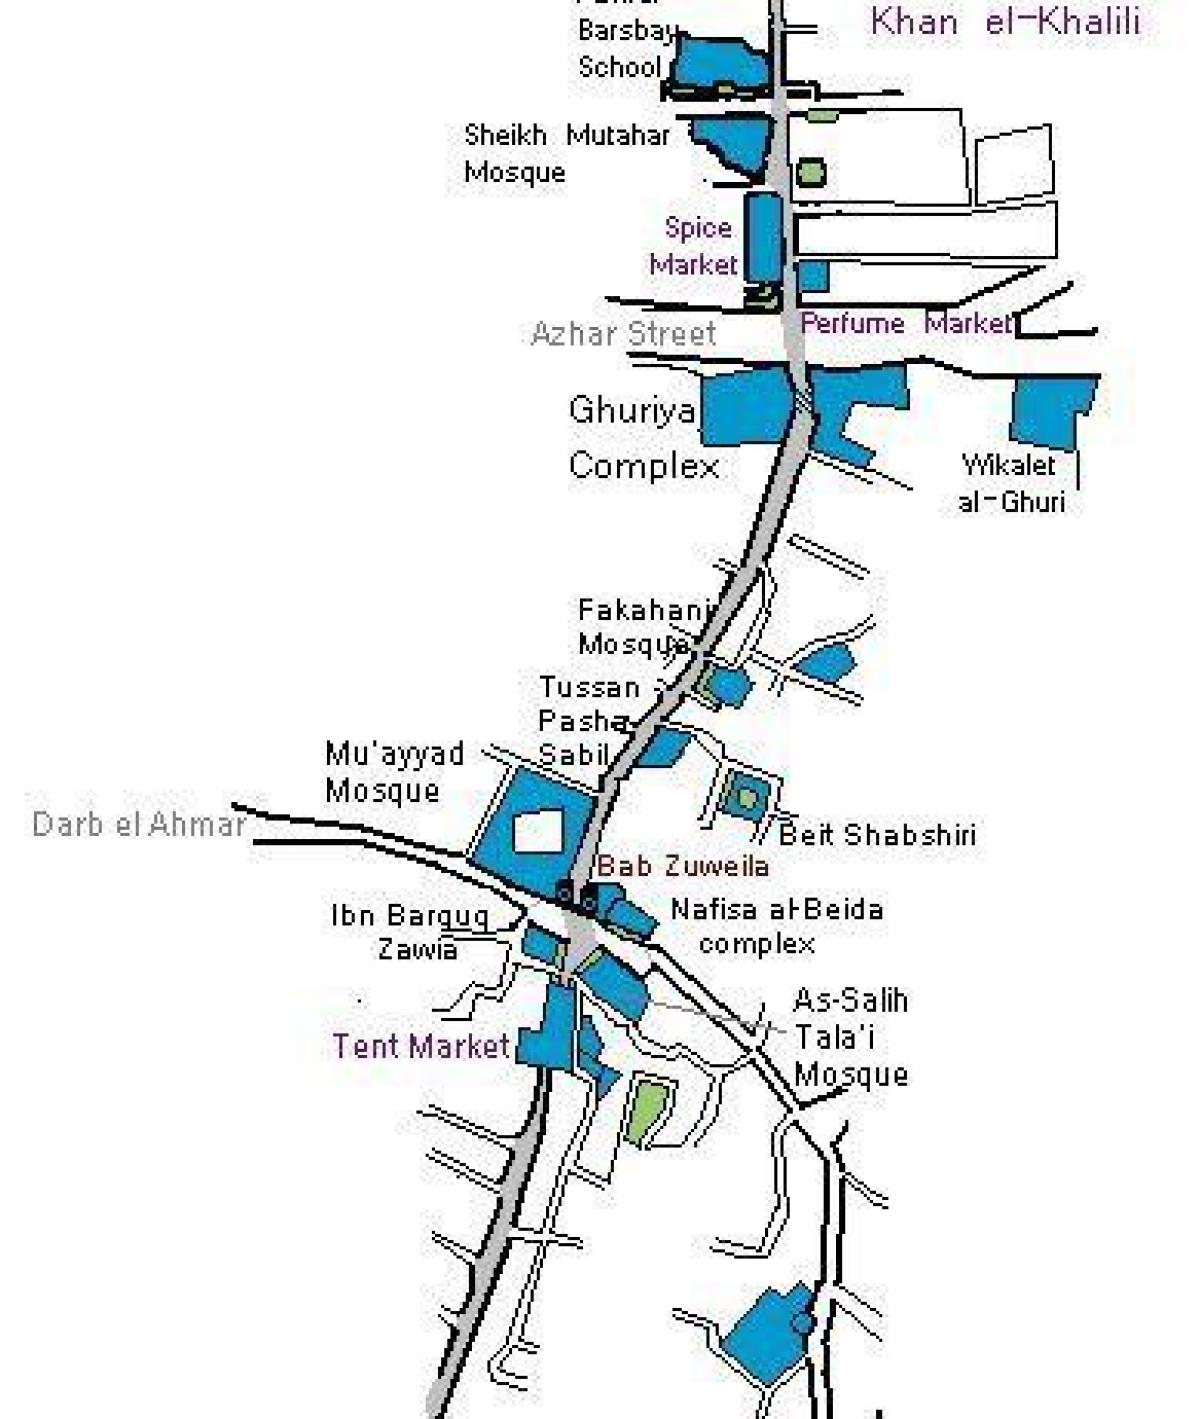 Кан ел-кхалили базар мапи